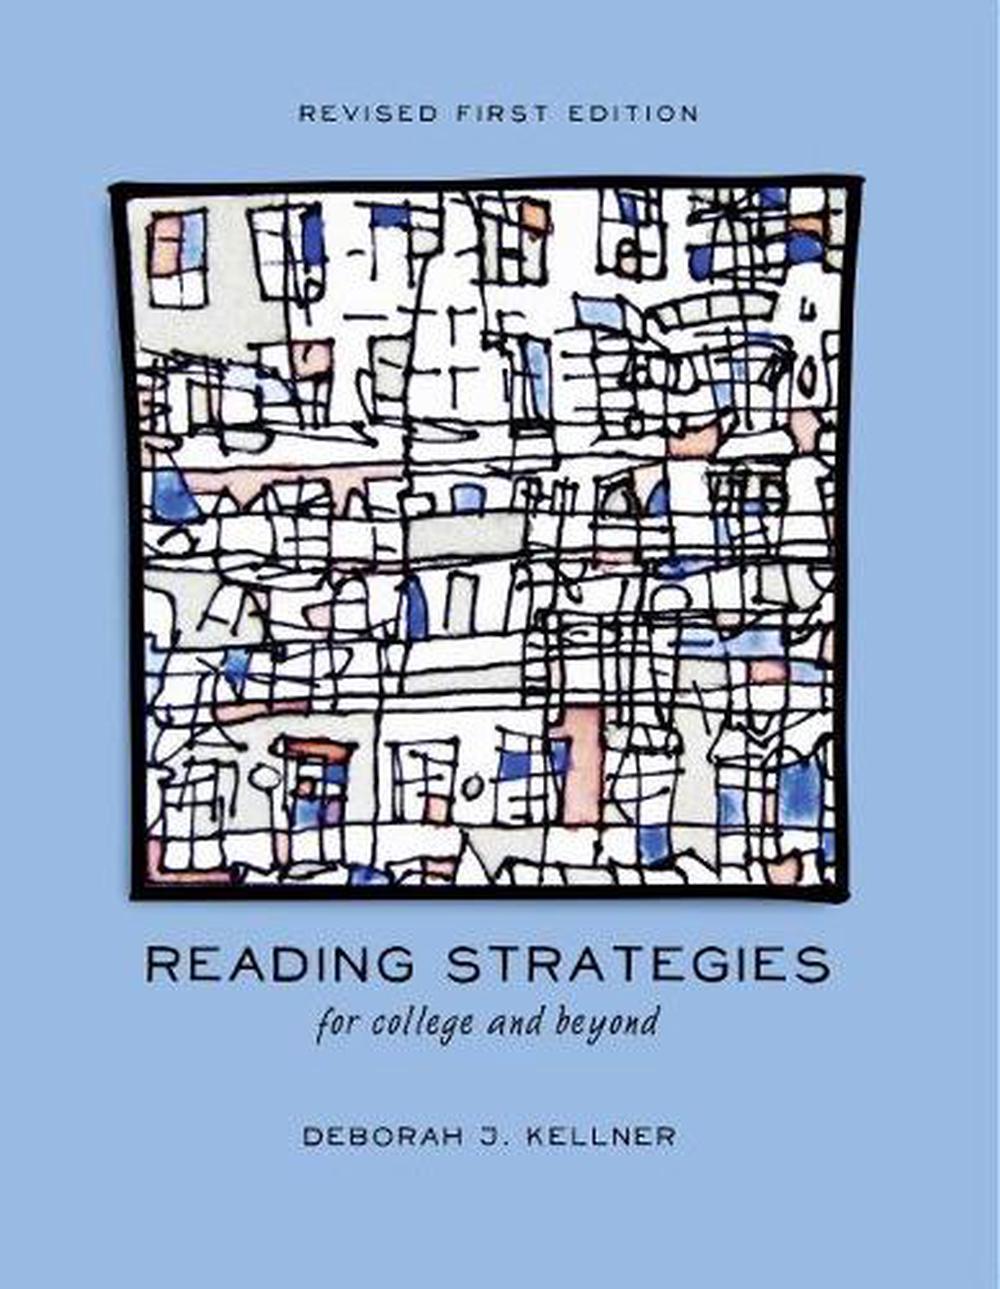 Reading Strategies for College and Beyond by Deborah J. Kellner